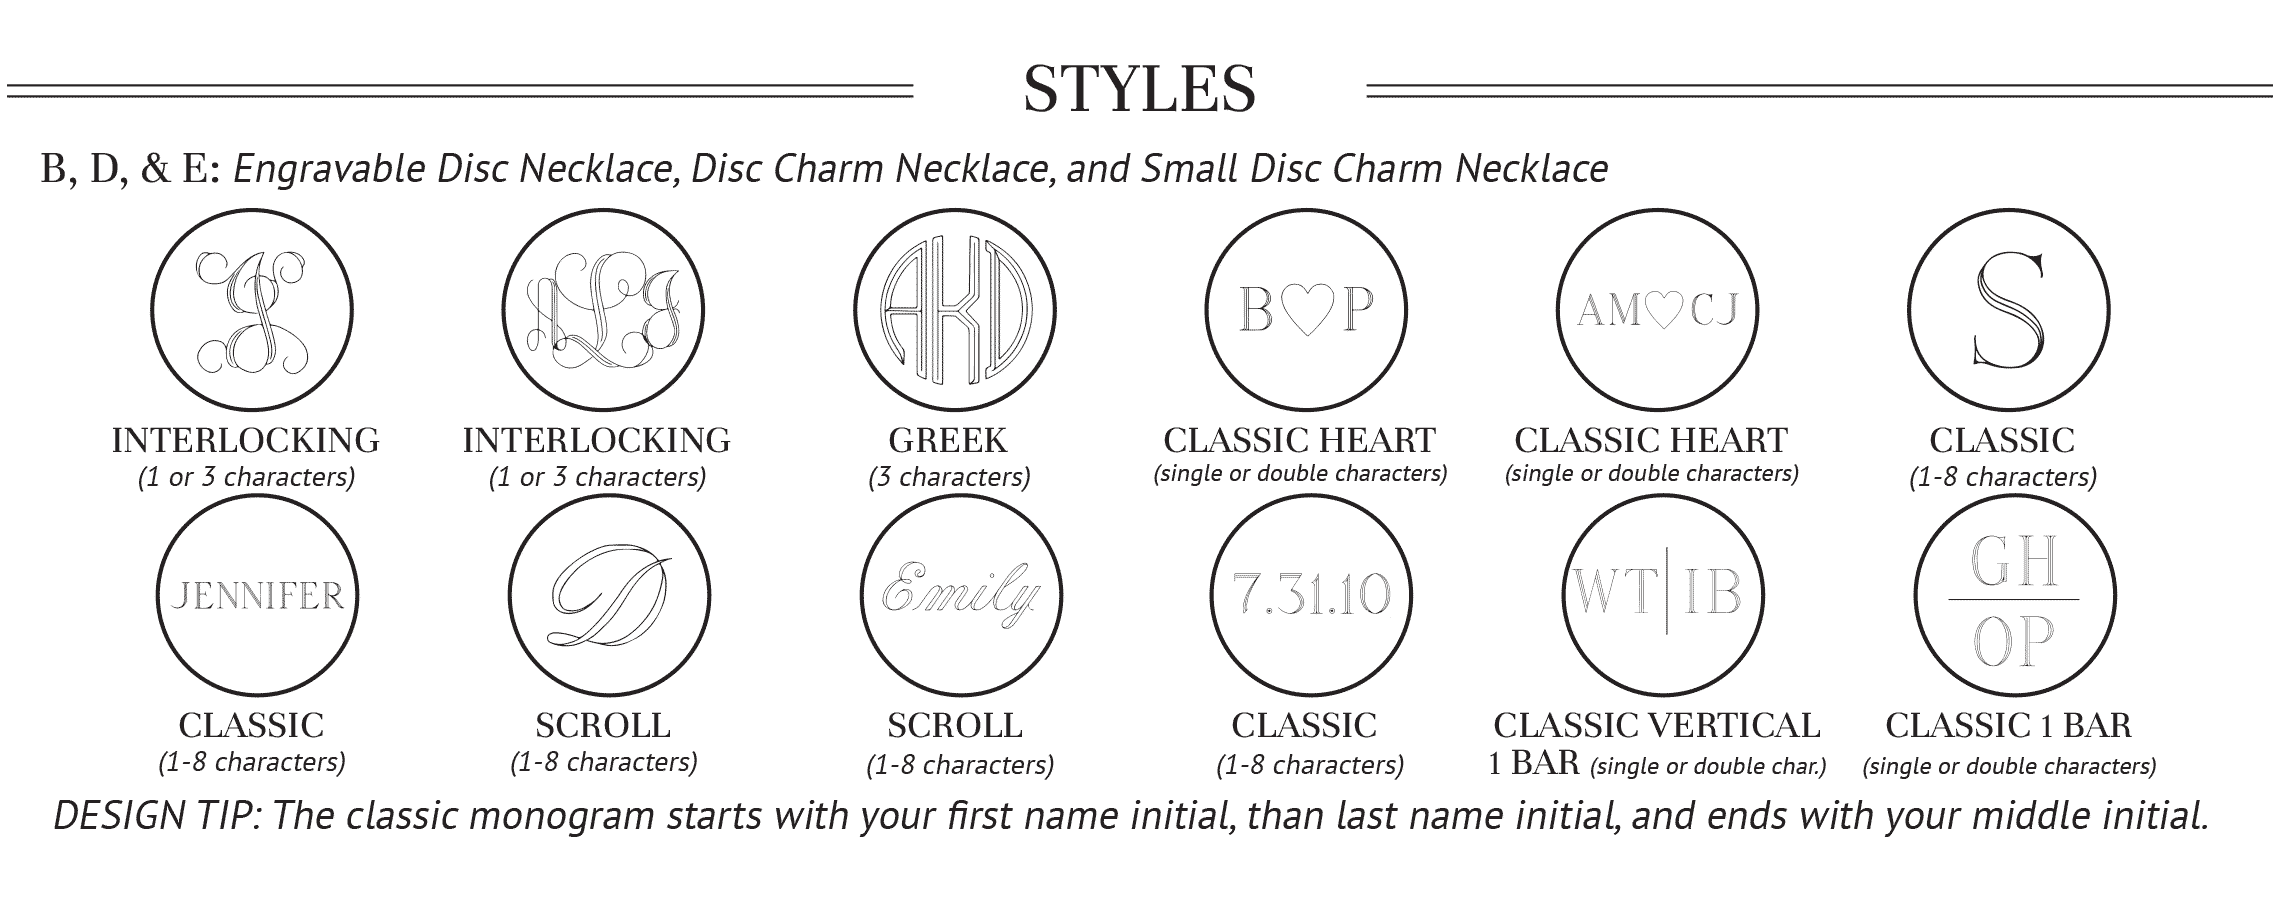 Styles for SS-EN-004